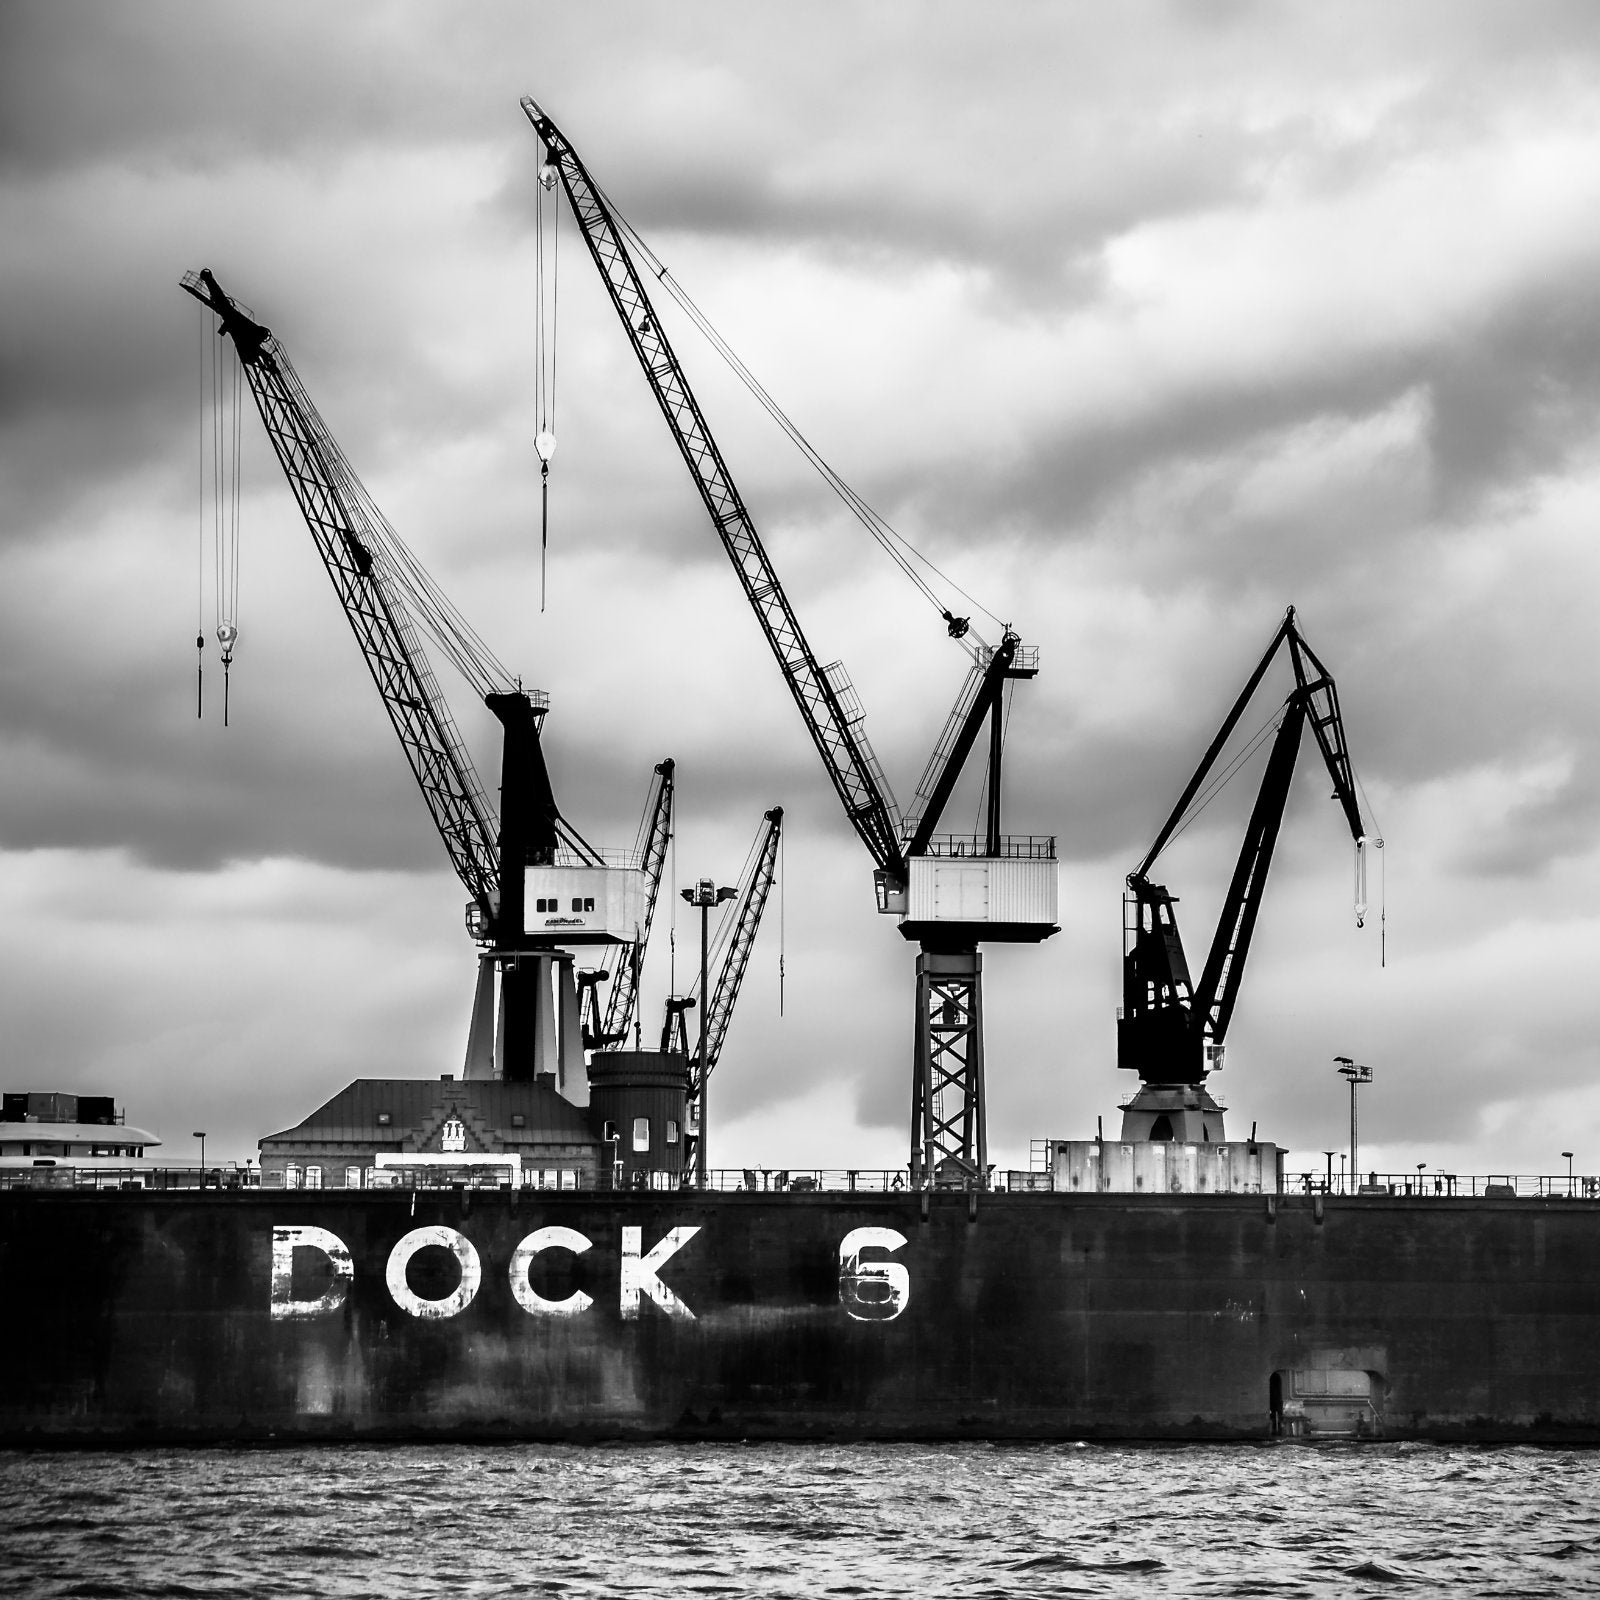 Foto "Dock 6" HH-028 10x10 - Kila